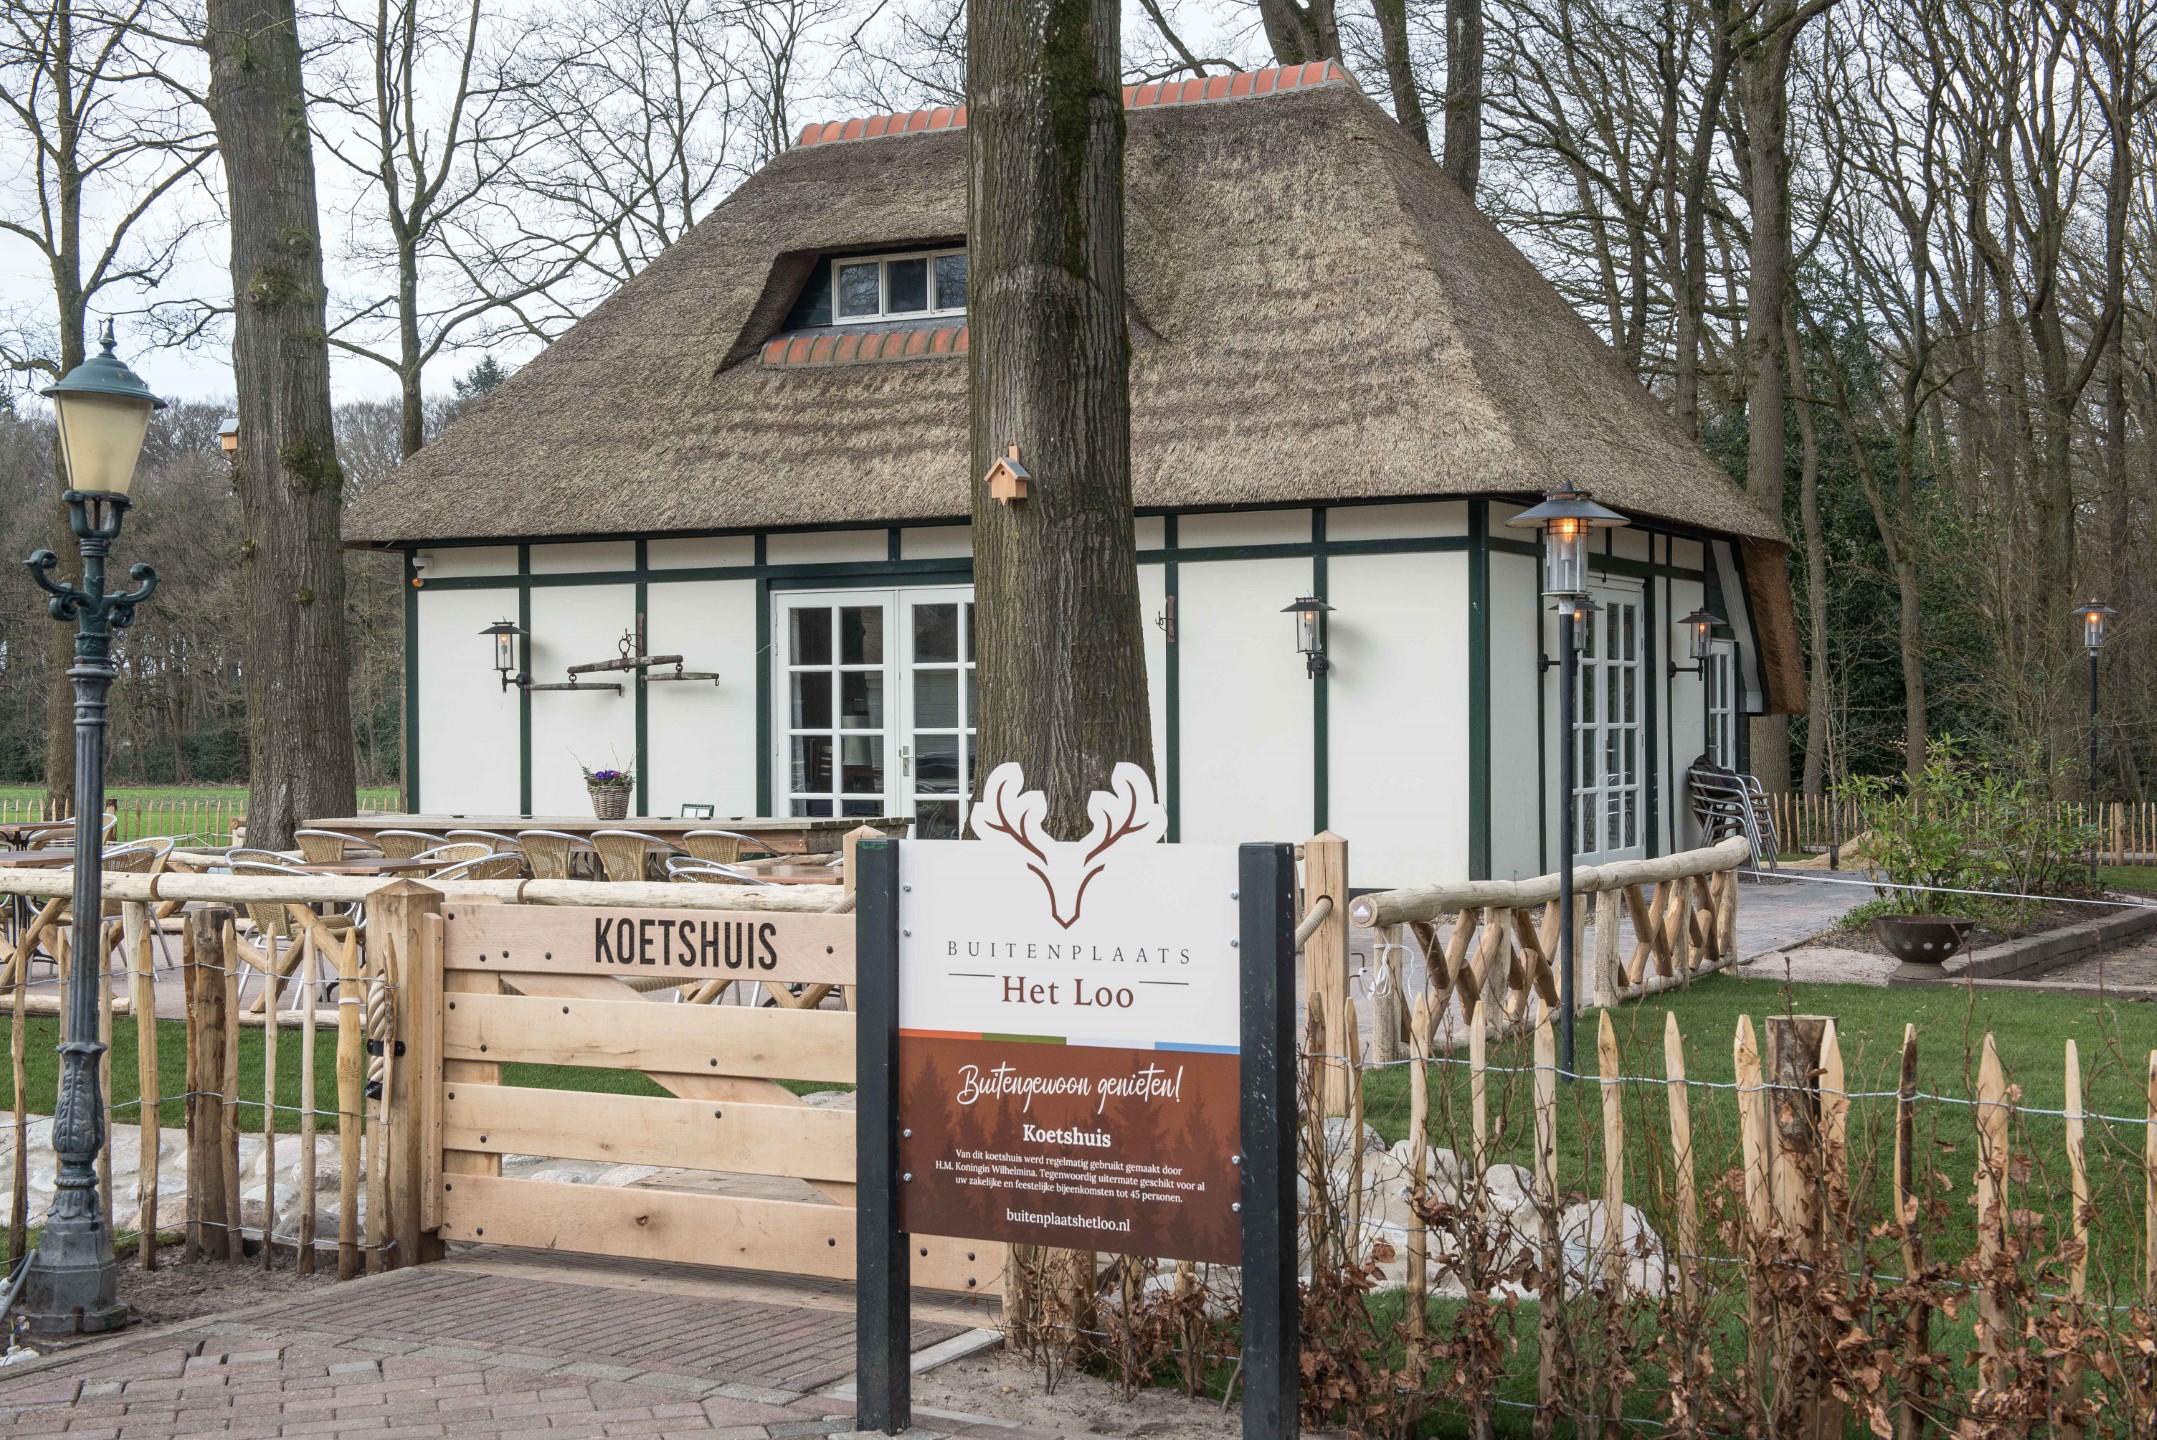 Buitenplaats Het Loo is het restaurant in Ermelo waar natuur en horeca samenkomen. Kom langs & geniet!